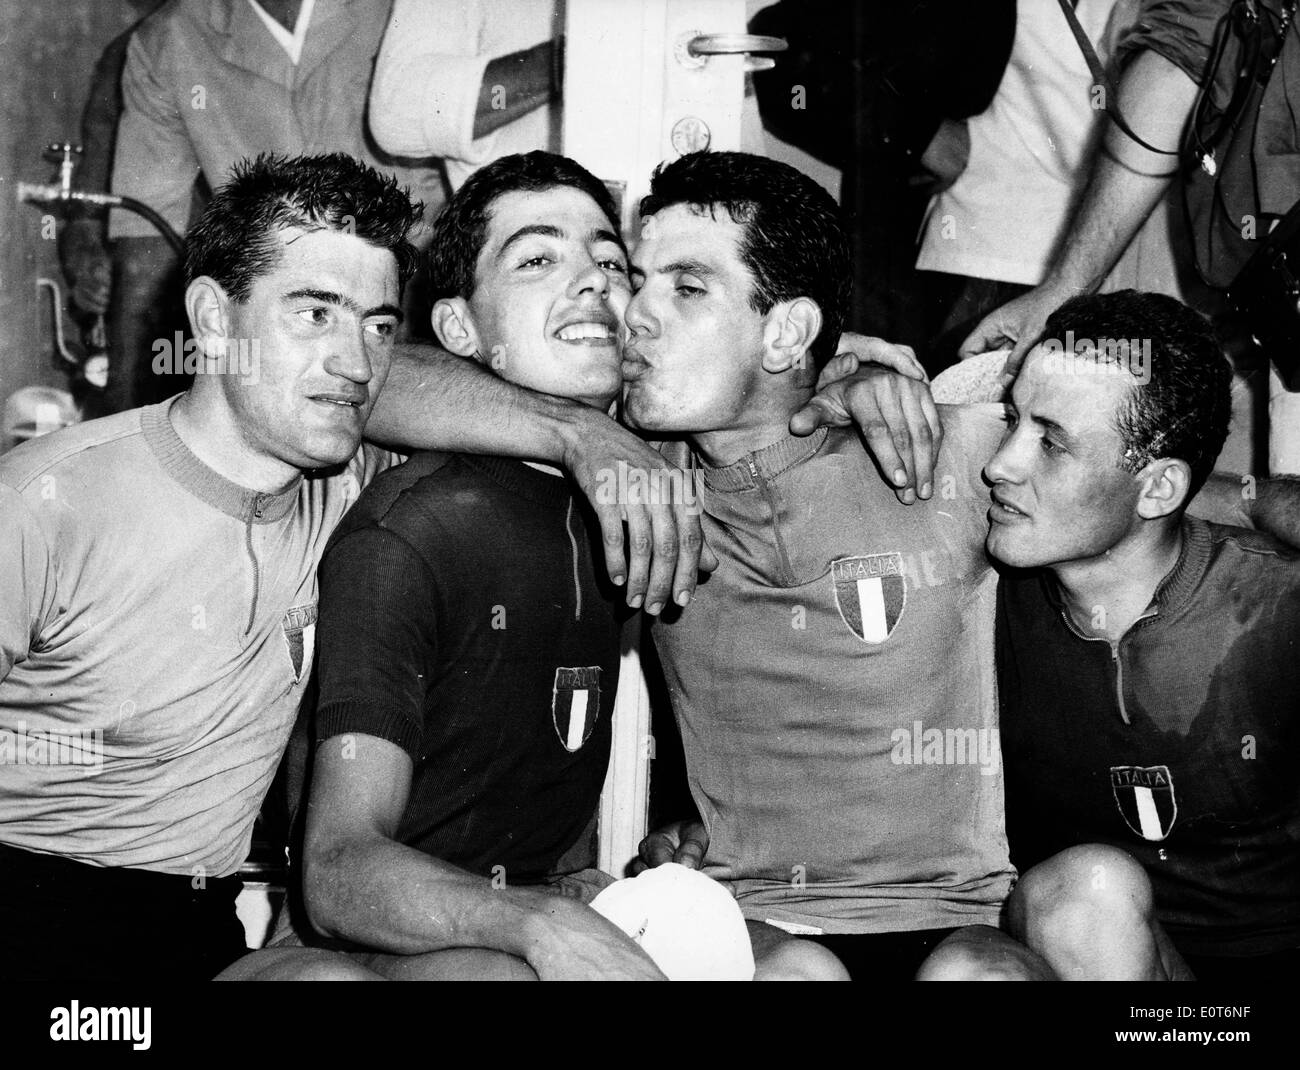 Italian cycling team celebrates Olympic win Stock Photo